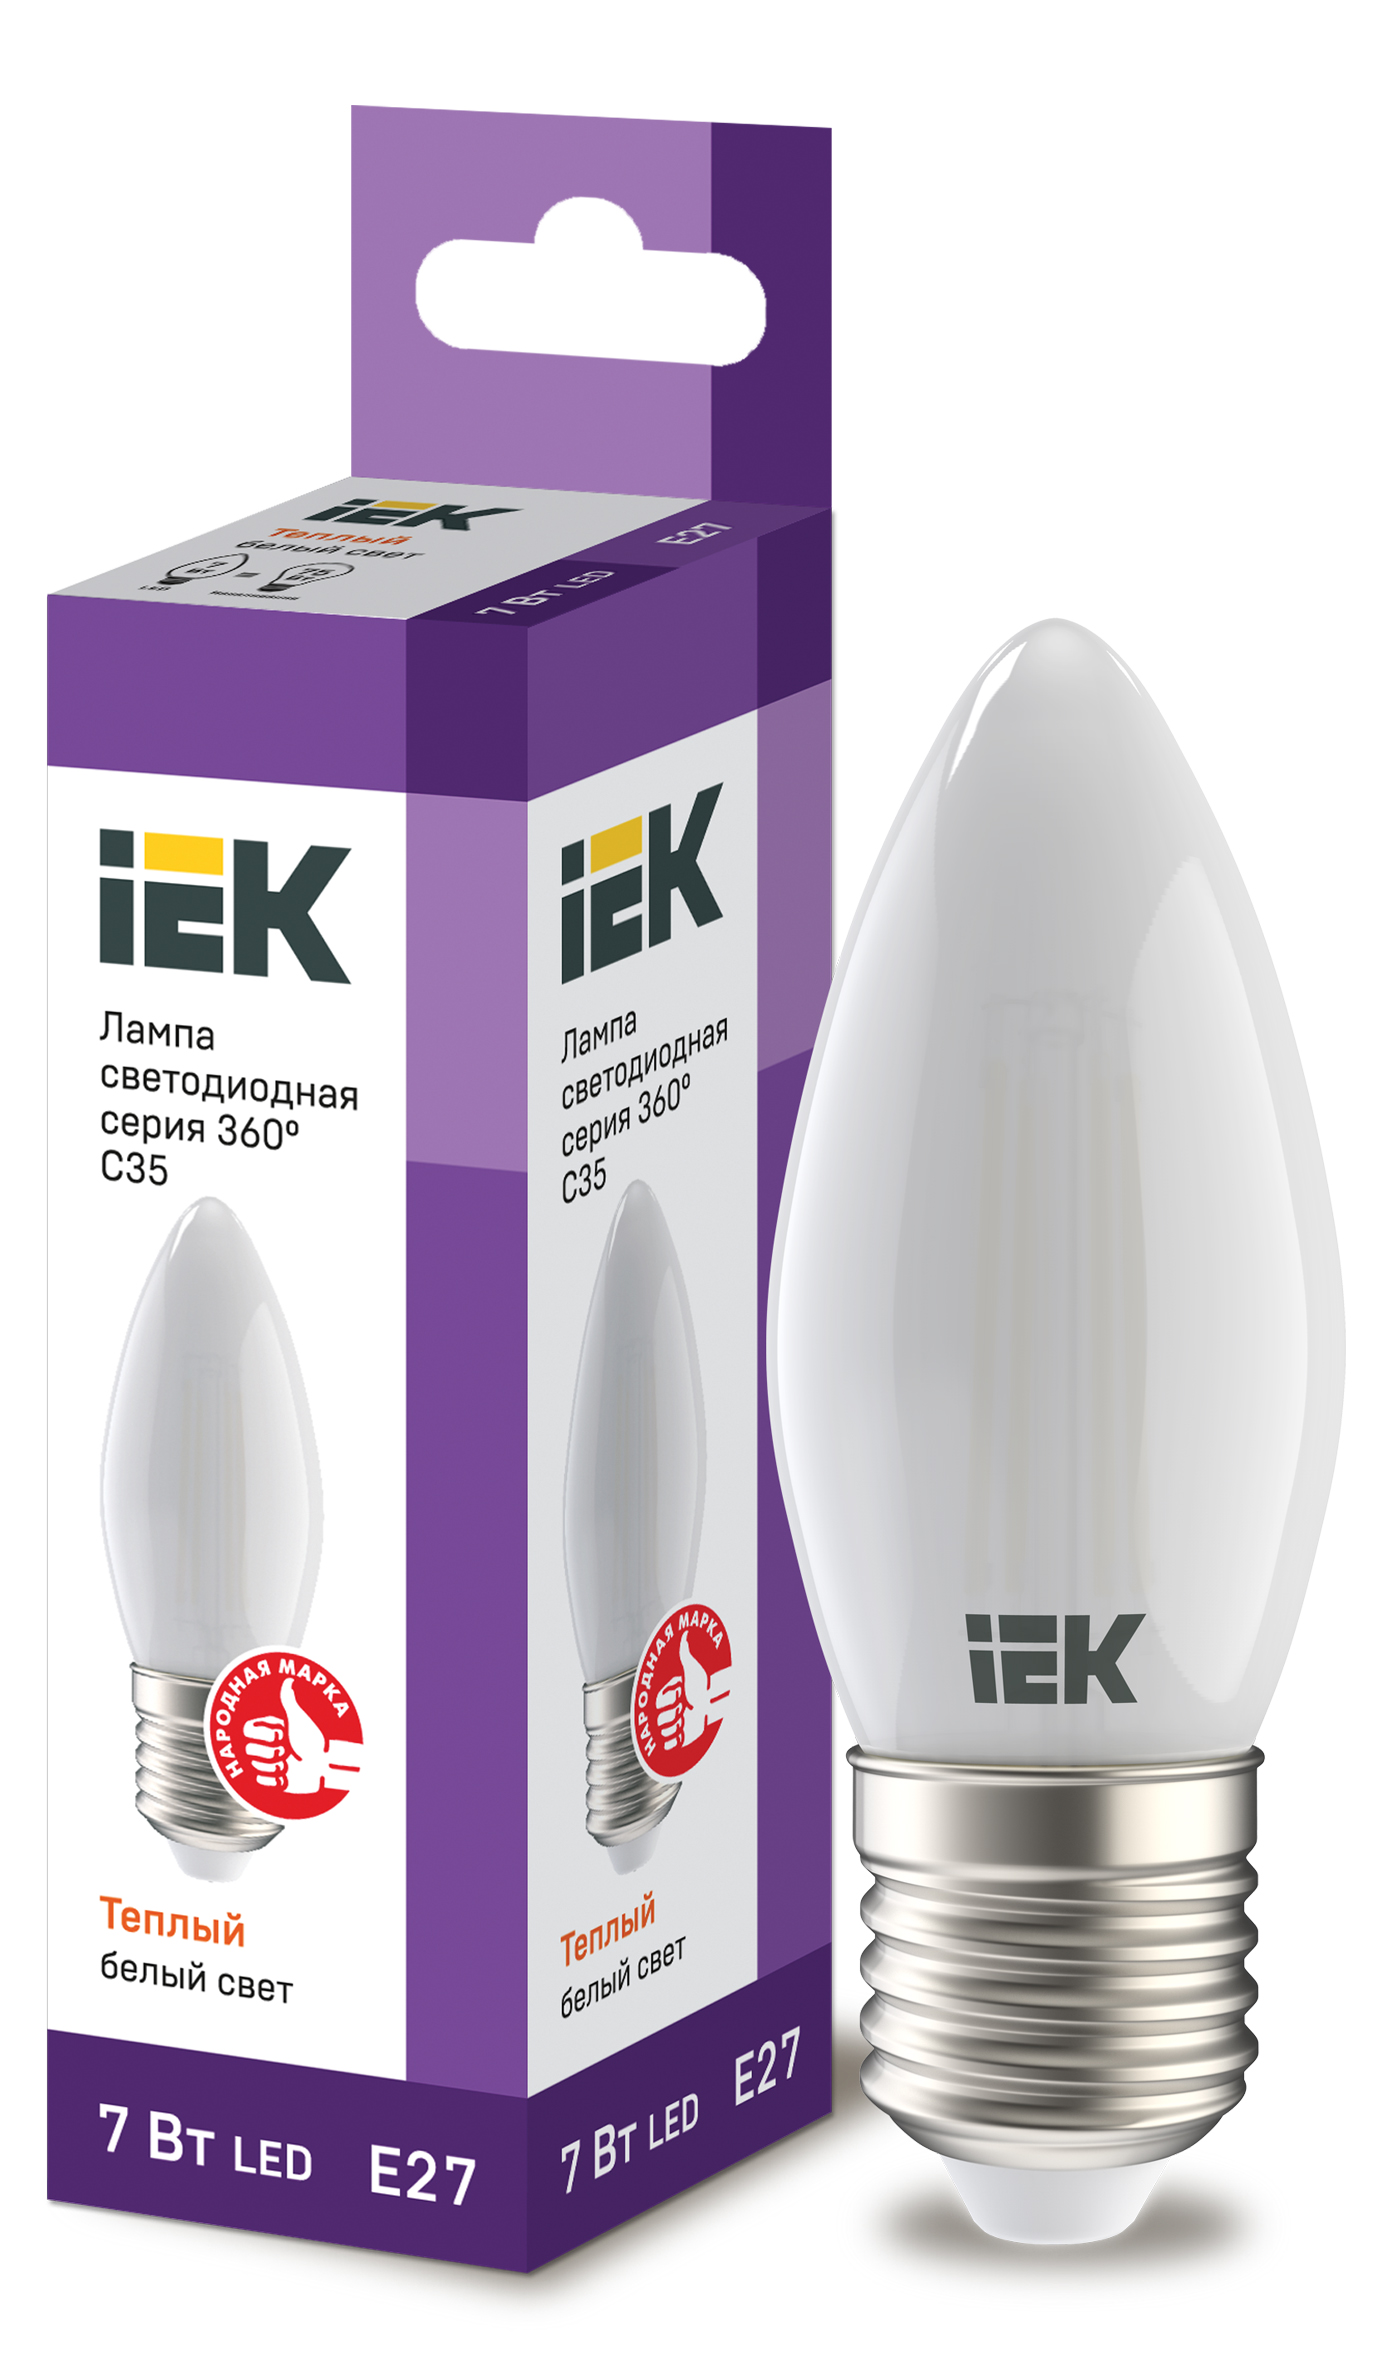 IEK Лампа LED C35 свеча матовый 7Вт 230В 3000К E27 серия 360°